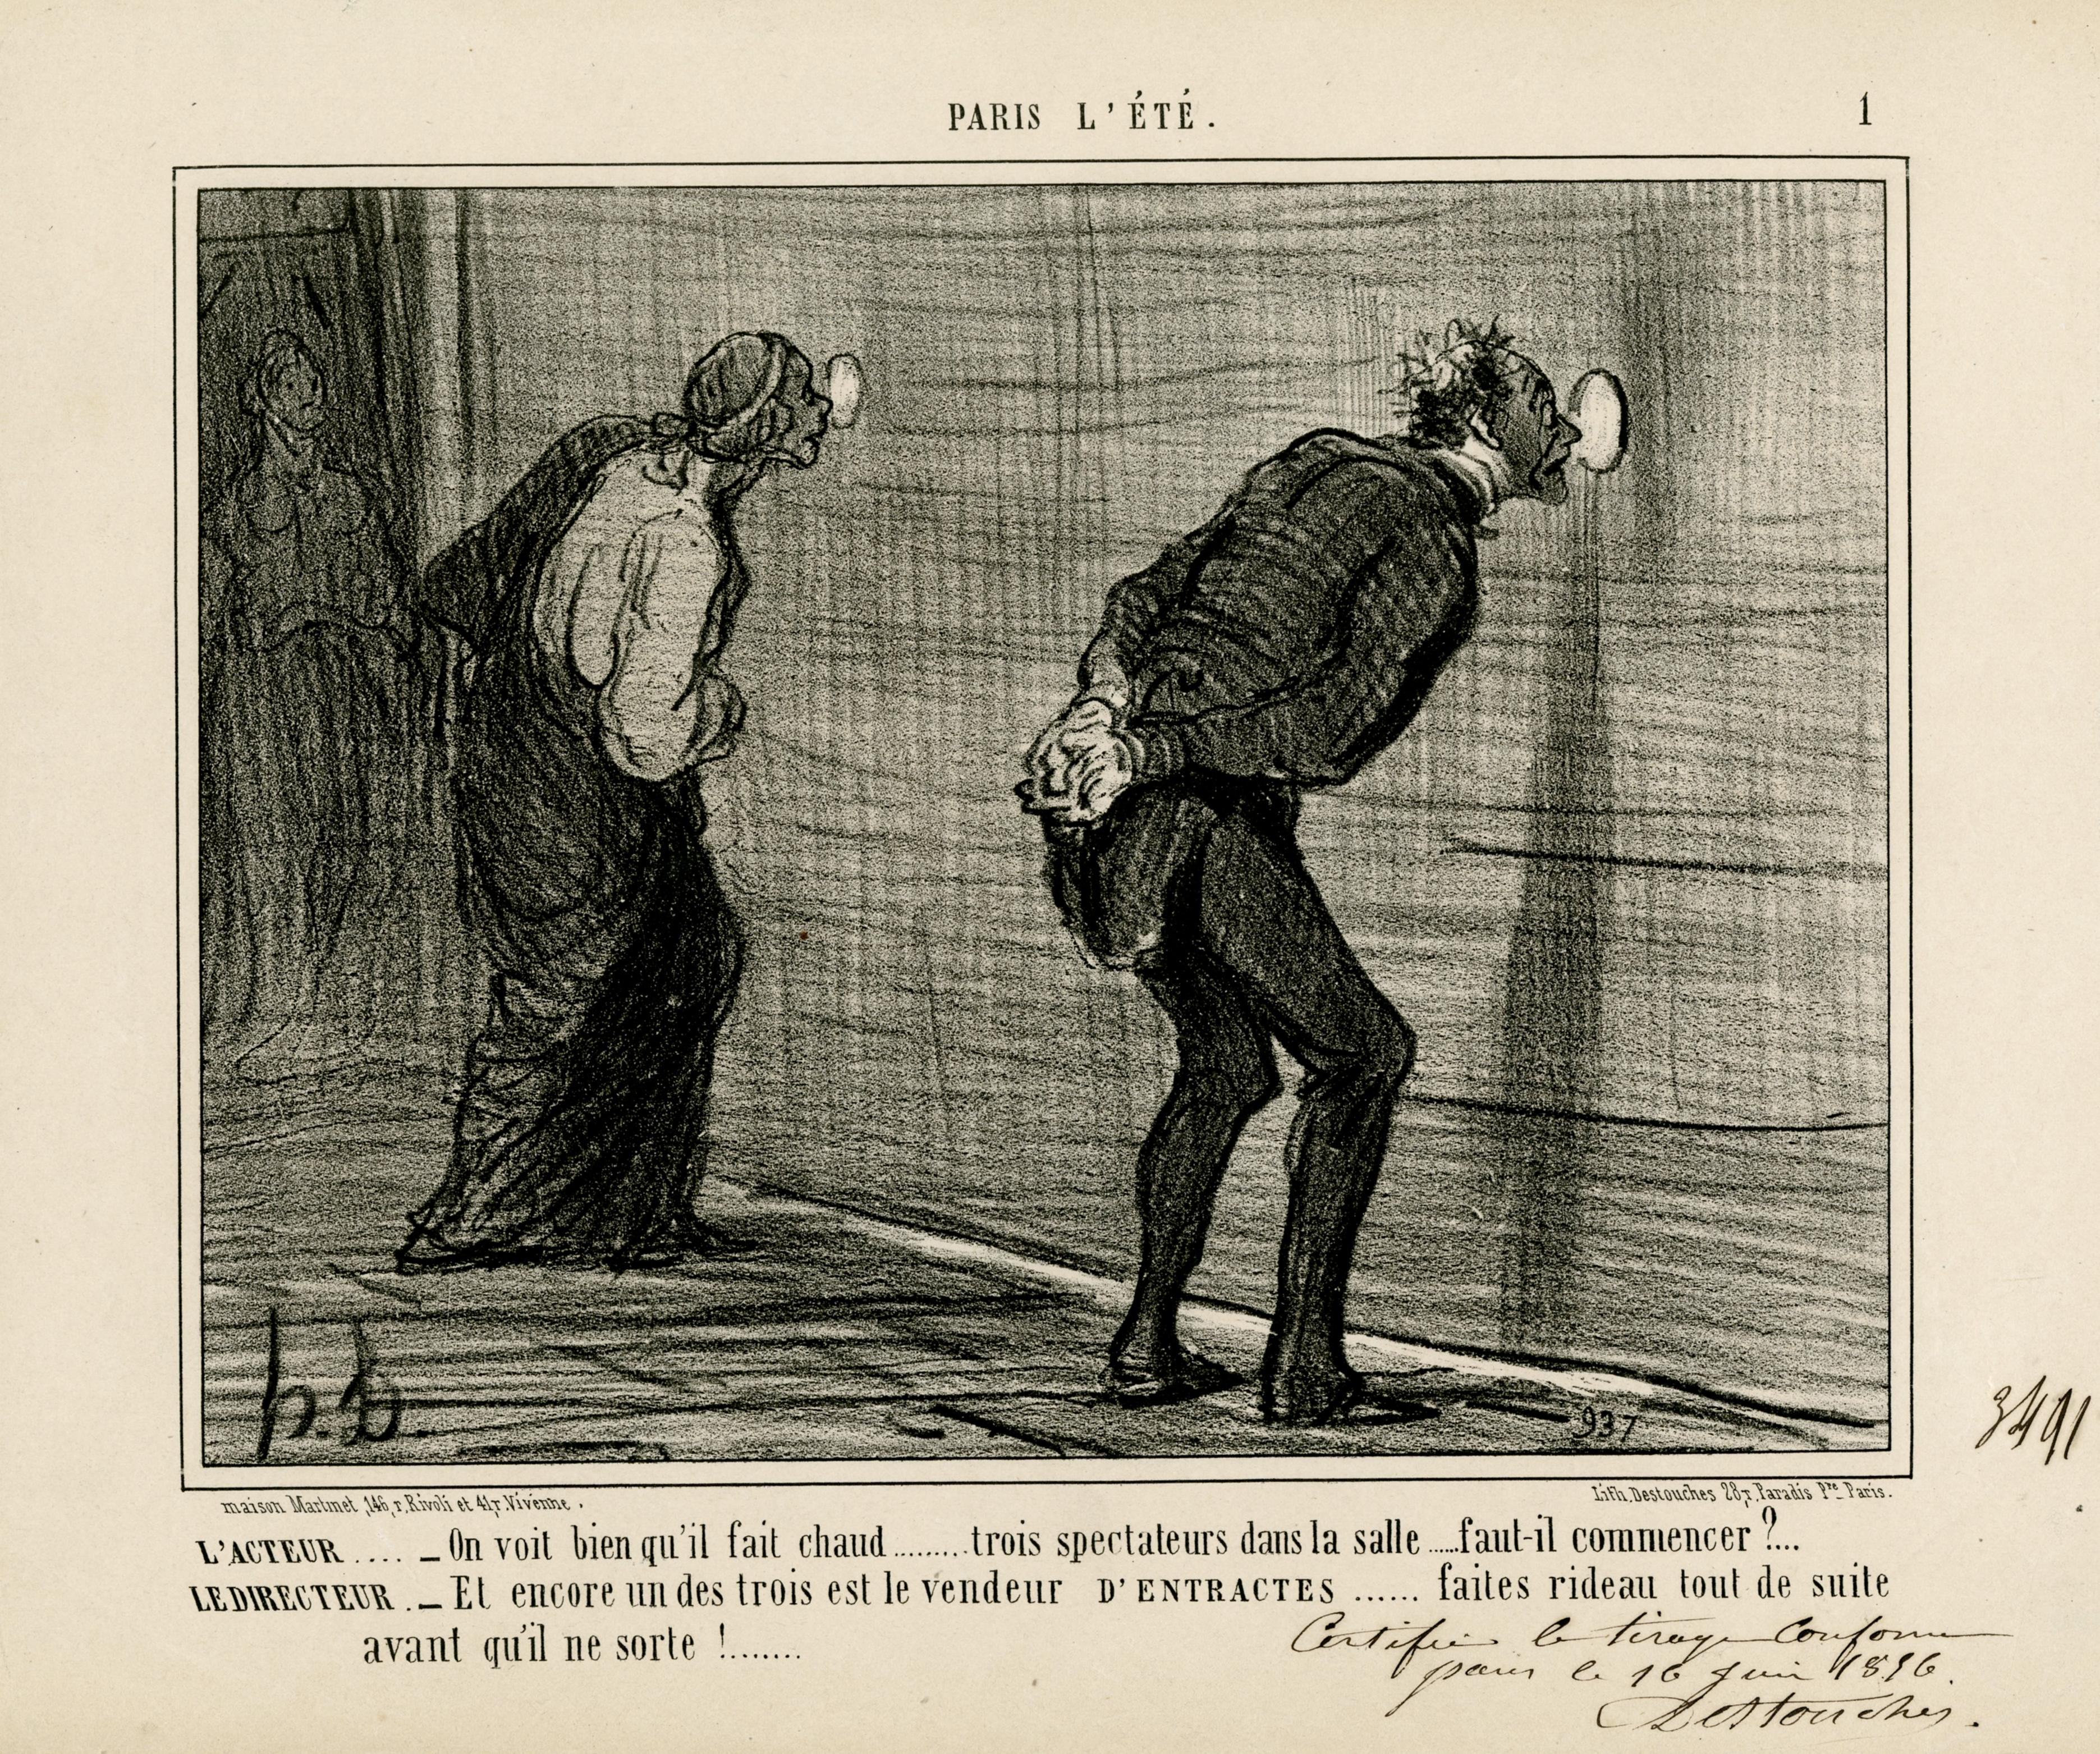 Honoré Daumier Figurative Print - L'ACTEUR . . . . - On voit bien qu'il fait chaud . . . . . . . trois spectateurs